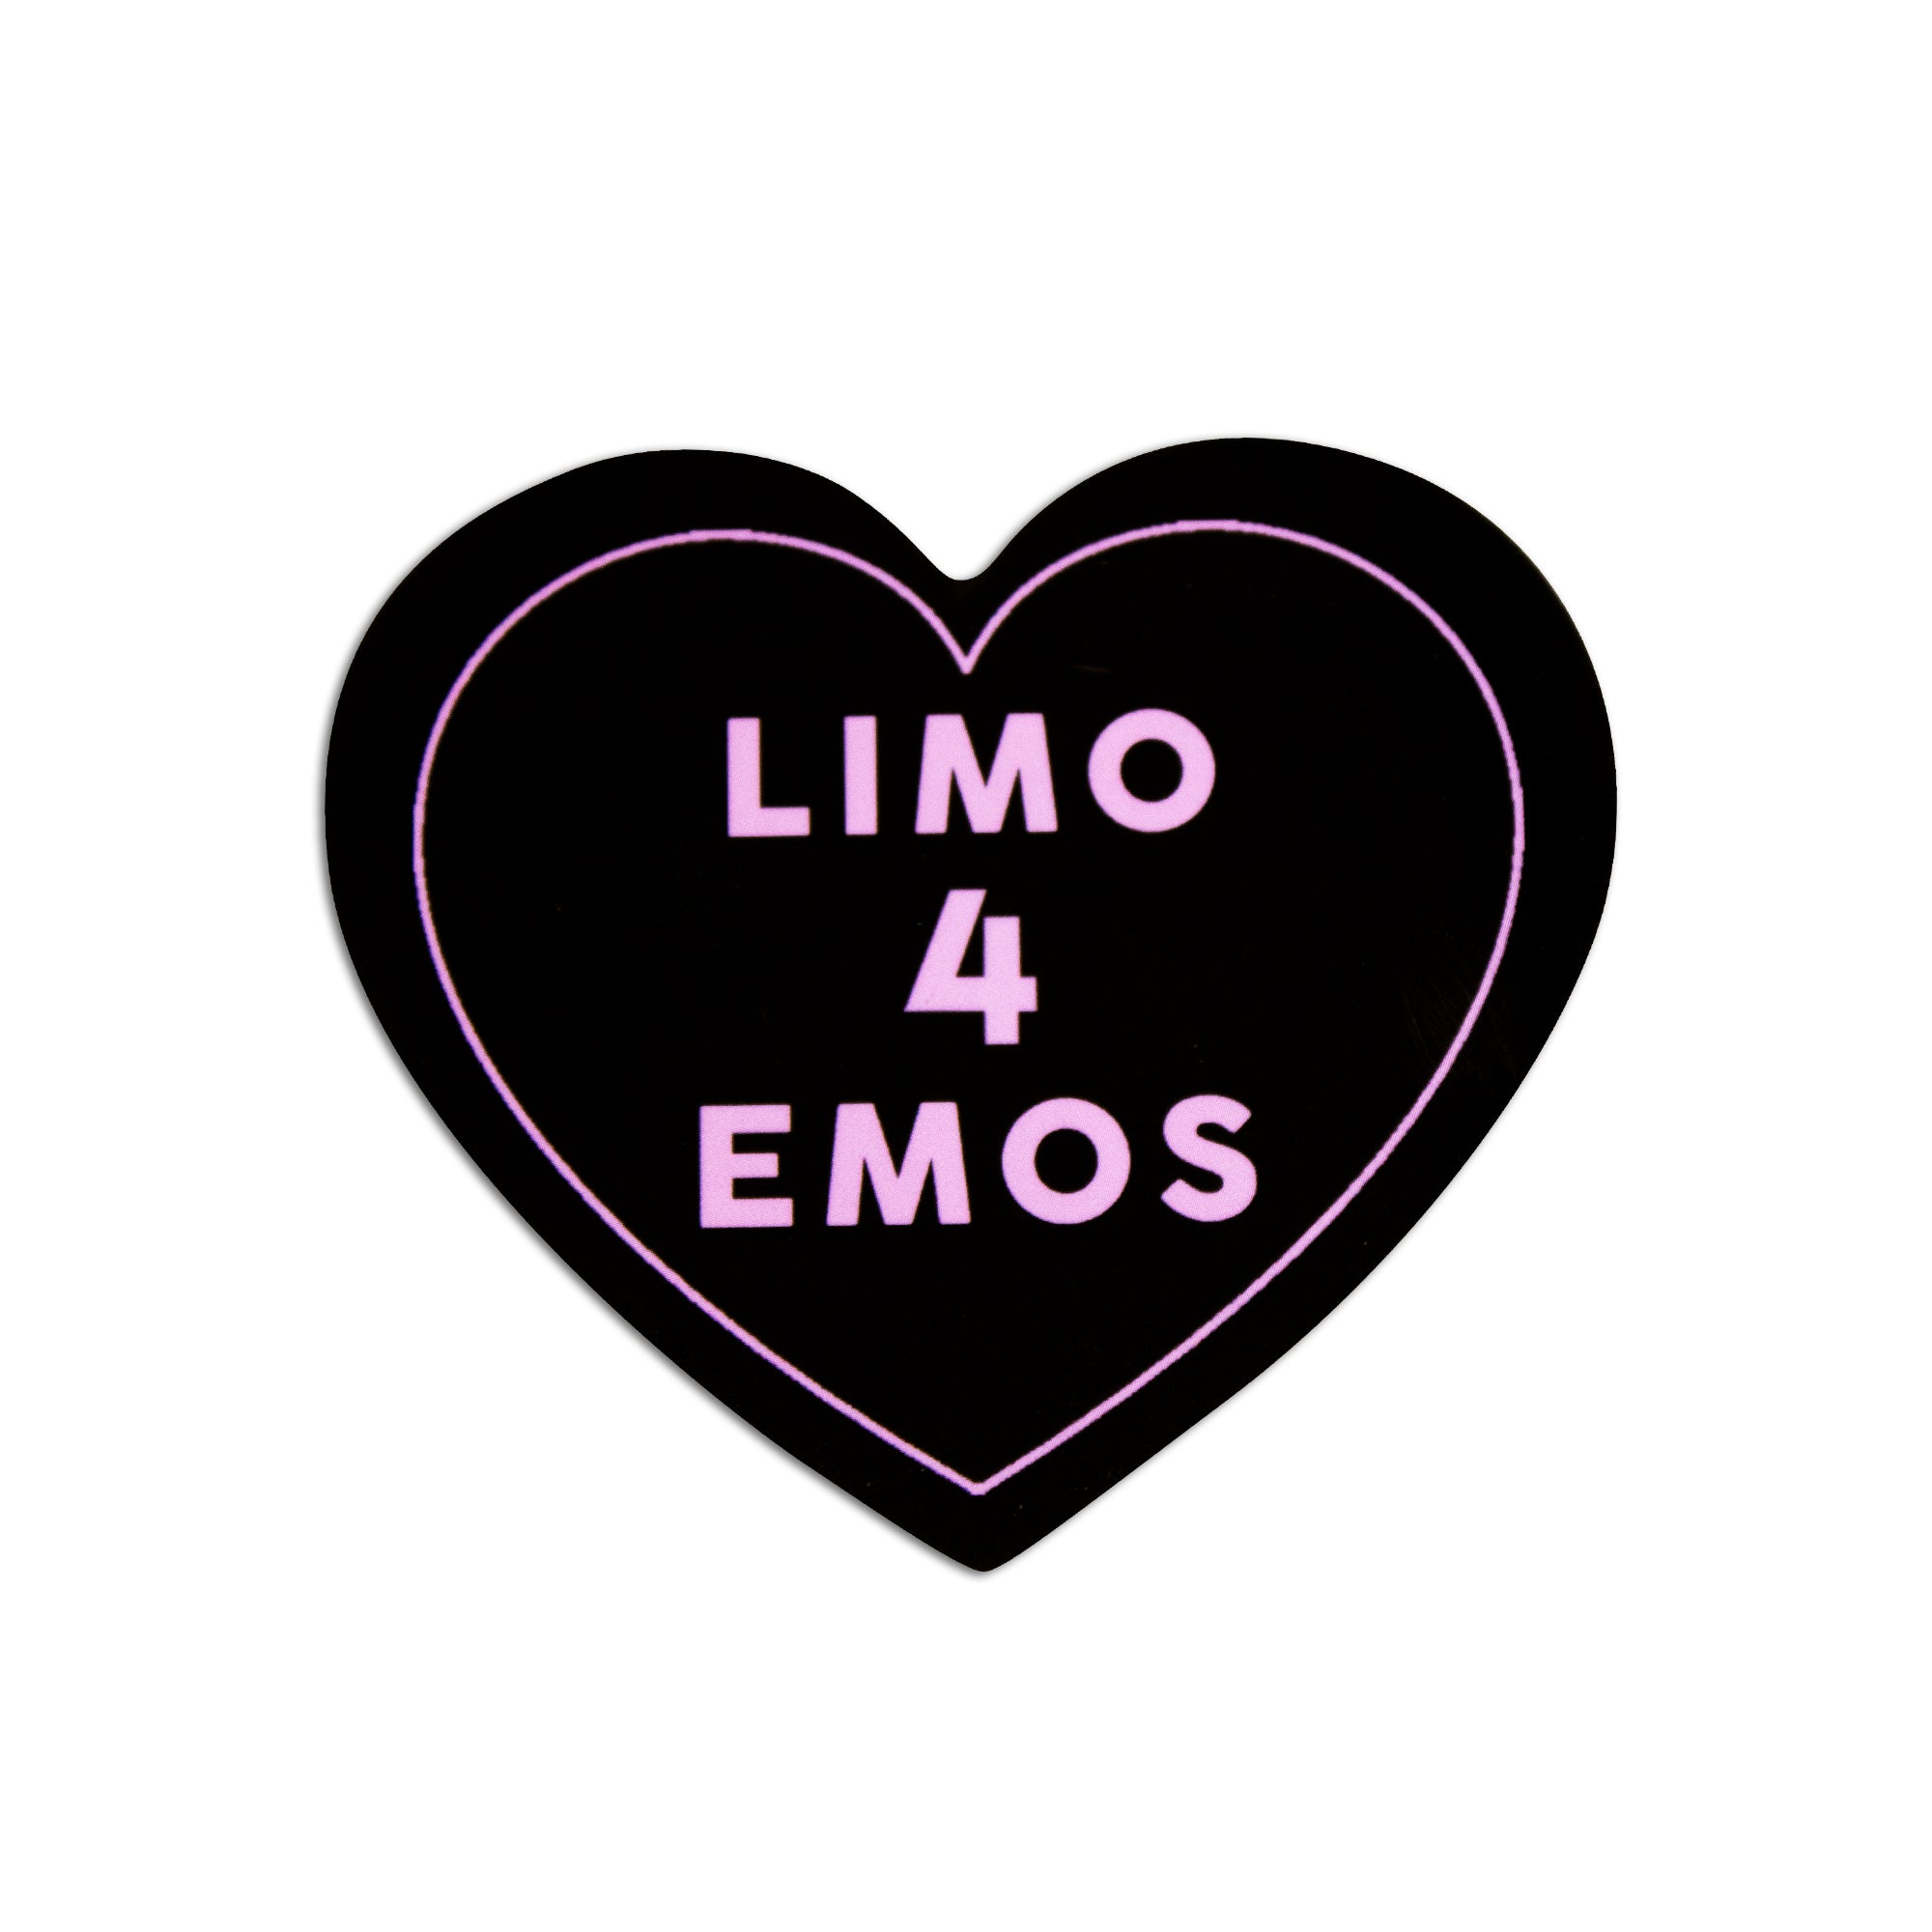 Limo 4 Emos Sticker